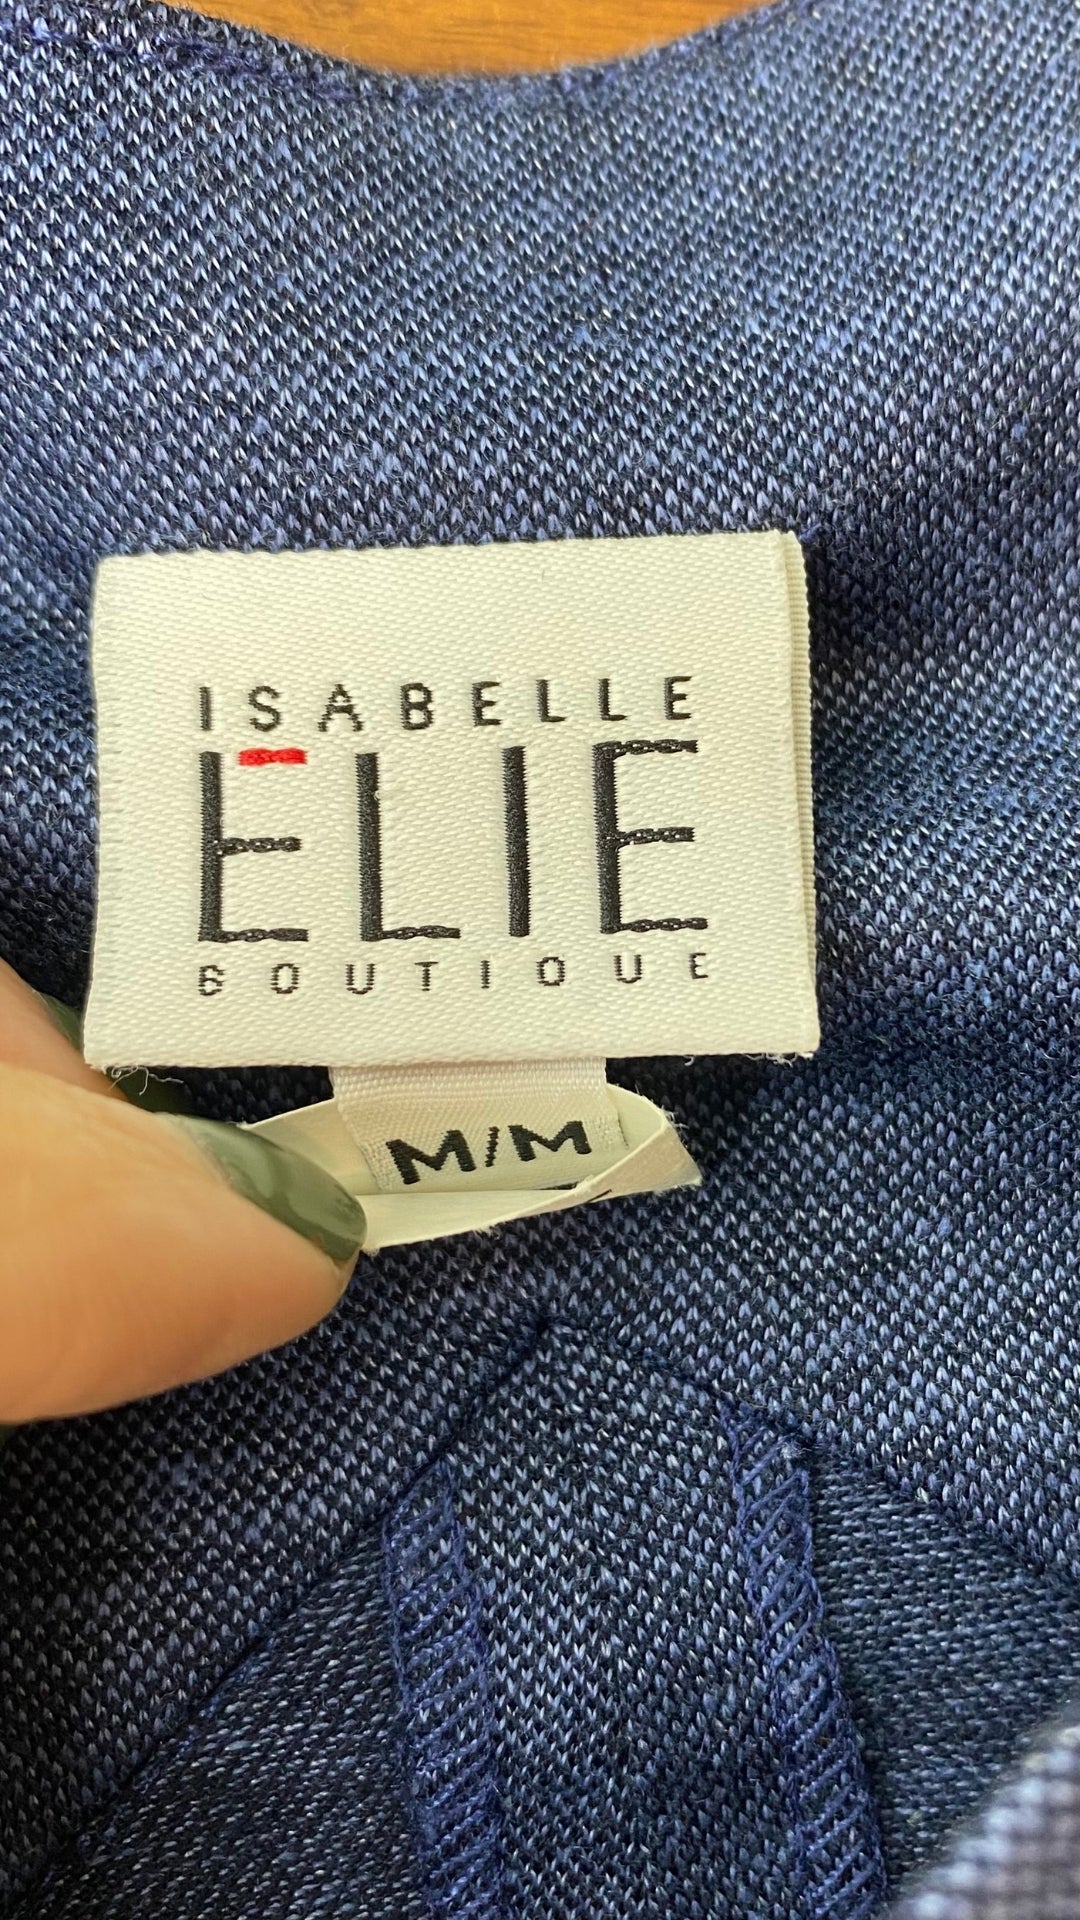 Robe cintrée en soie et lin sans manches Isabelle Elie Boutique, taille medium. Vue de l'étiquette de marque et taille.